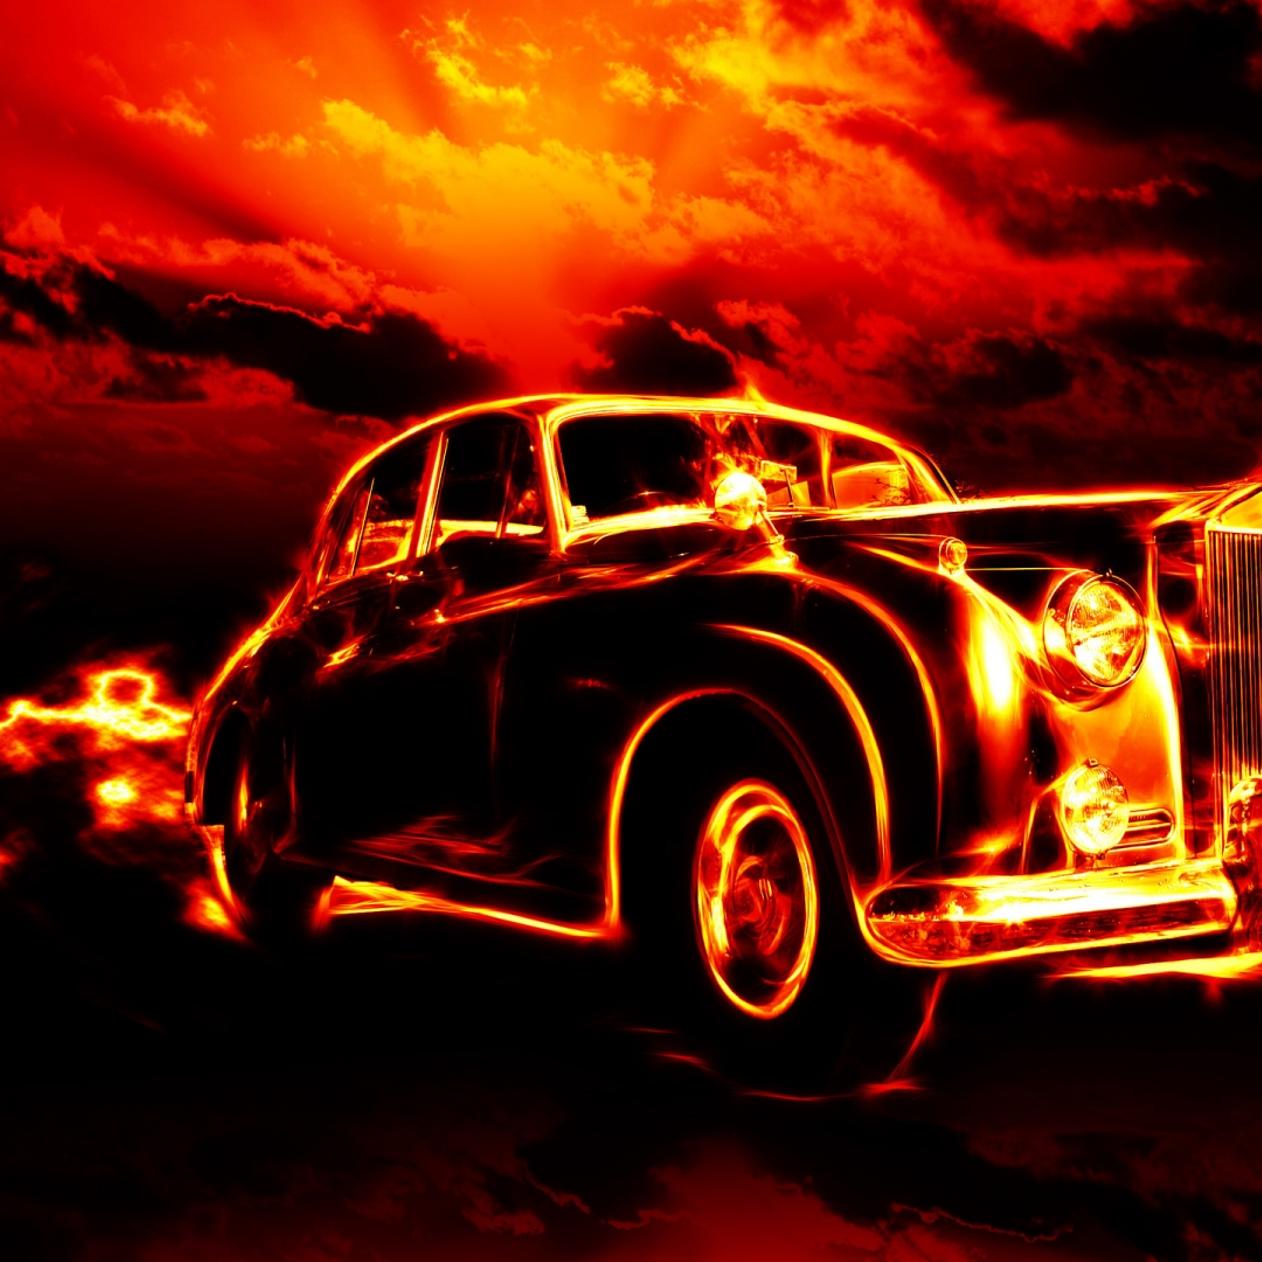 Vintage car in flames